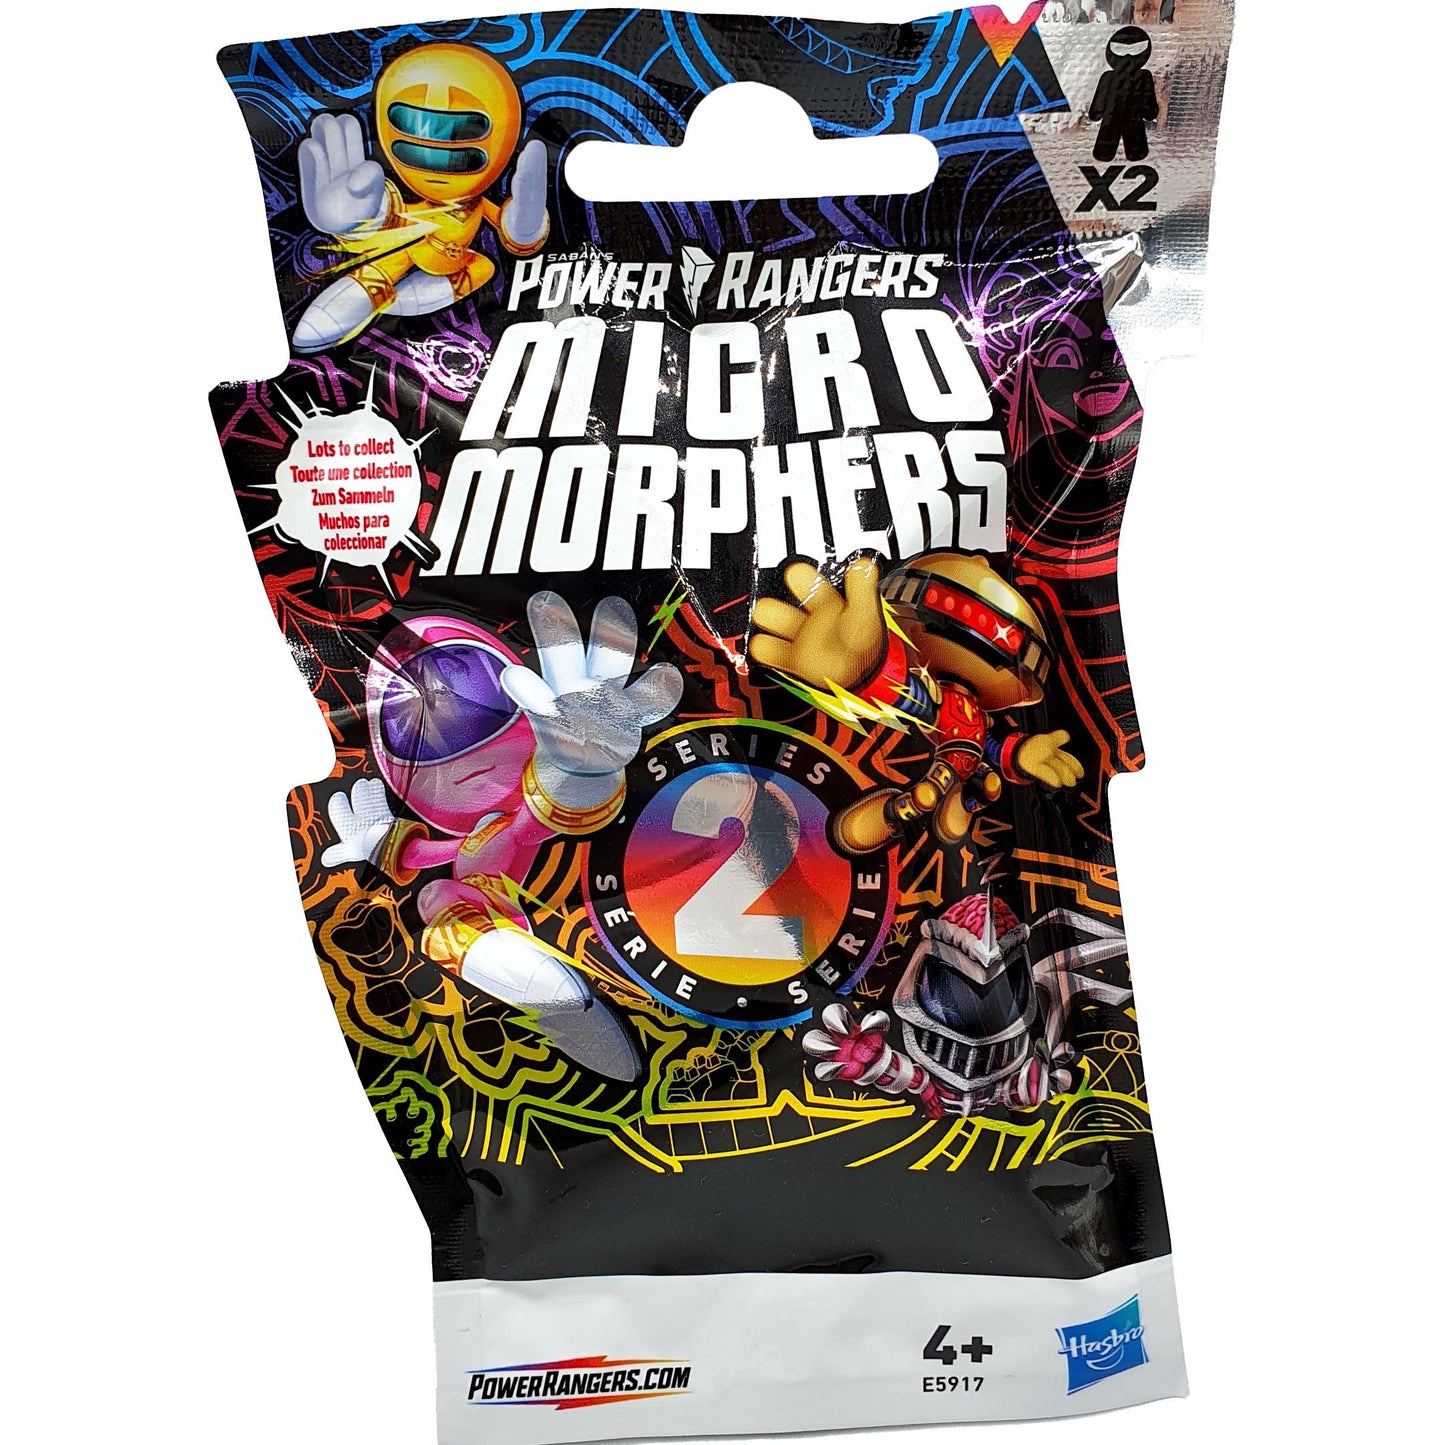 Power Rangers Micro Morphers Series 2 Blind Bags